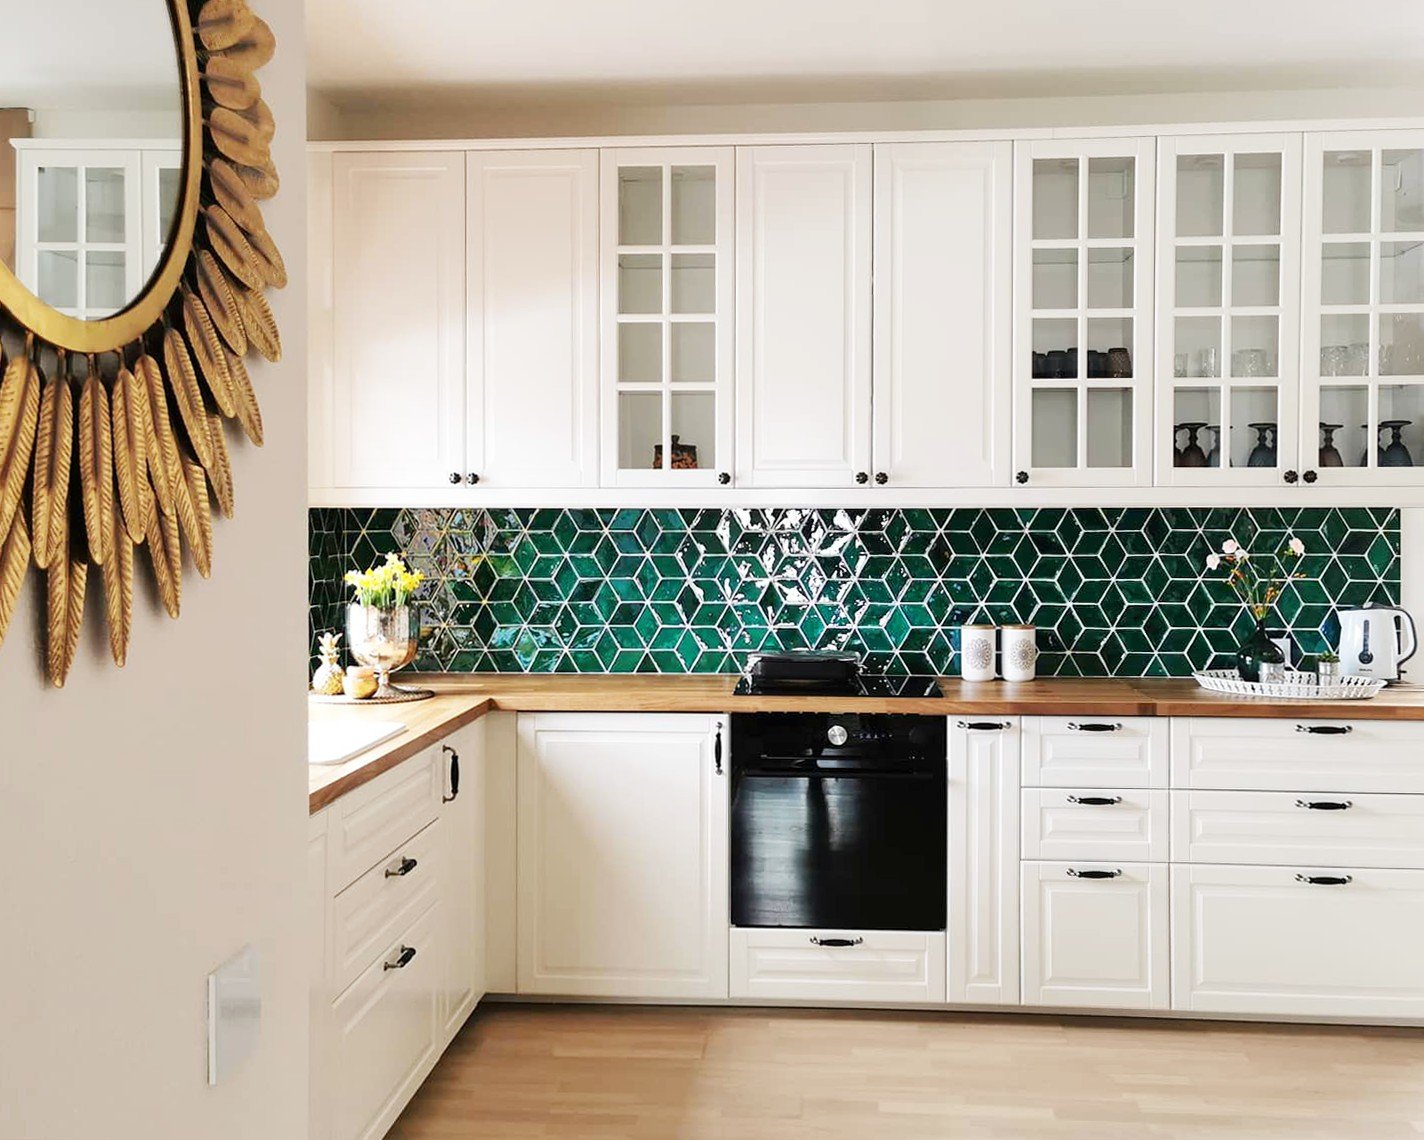 Glasierte Terracotta Wandfliesen - Farbe Grün, Referenz G305 - Format 8,5x14 cm, diamond - stilvolle Küche